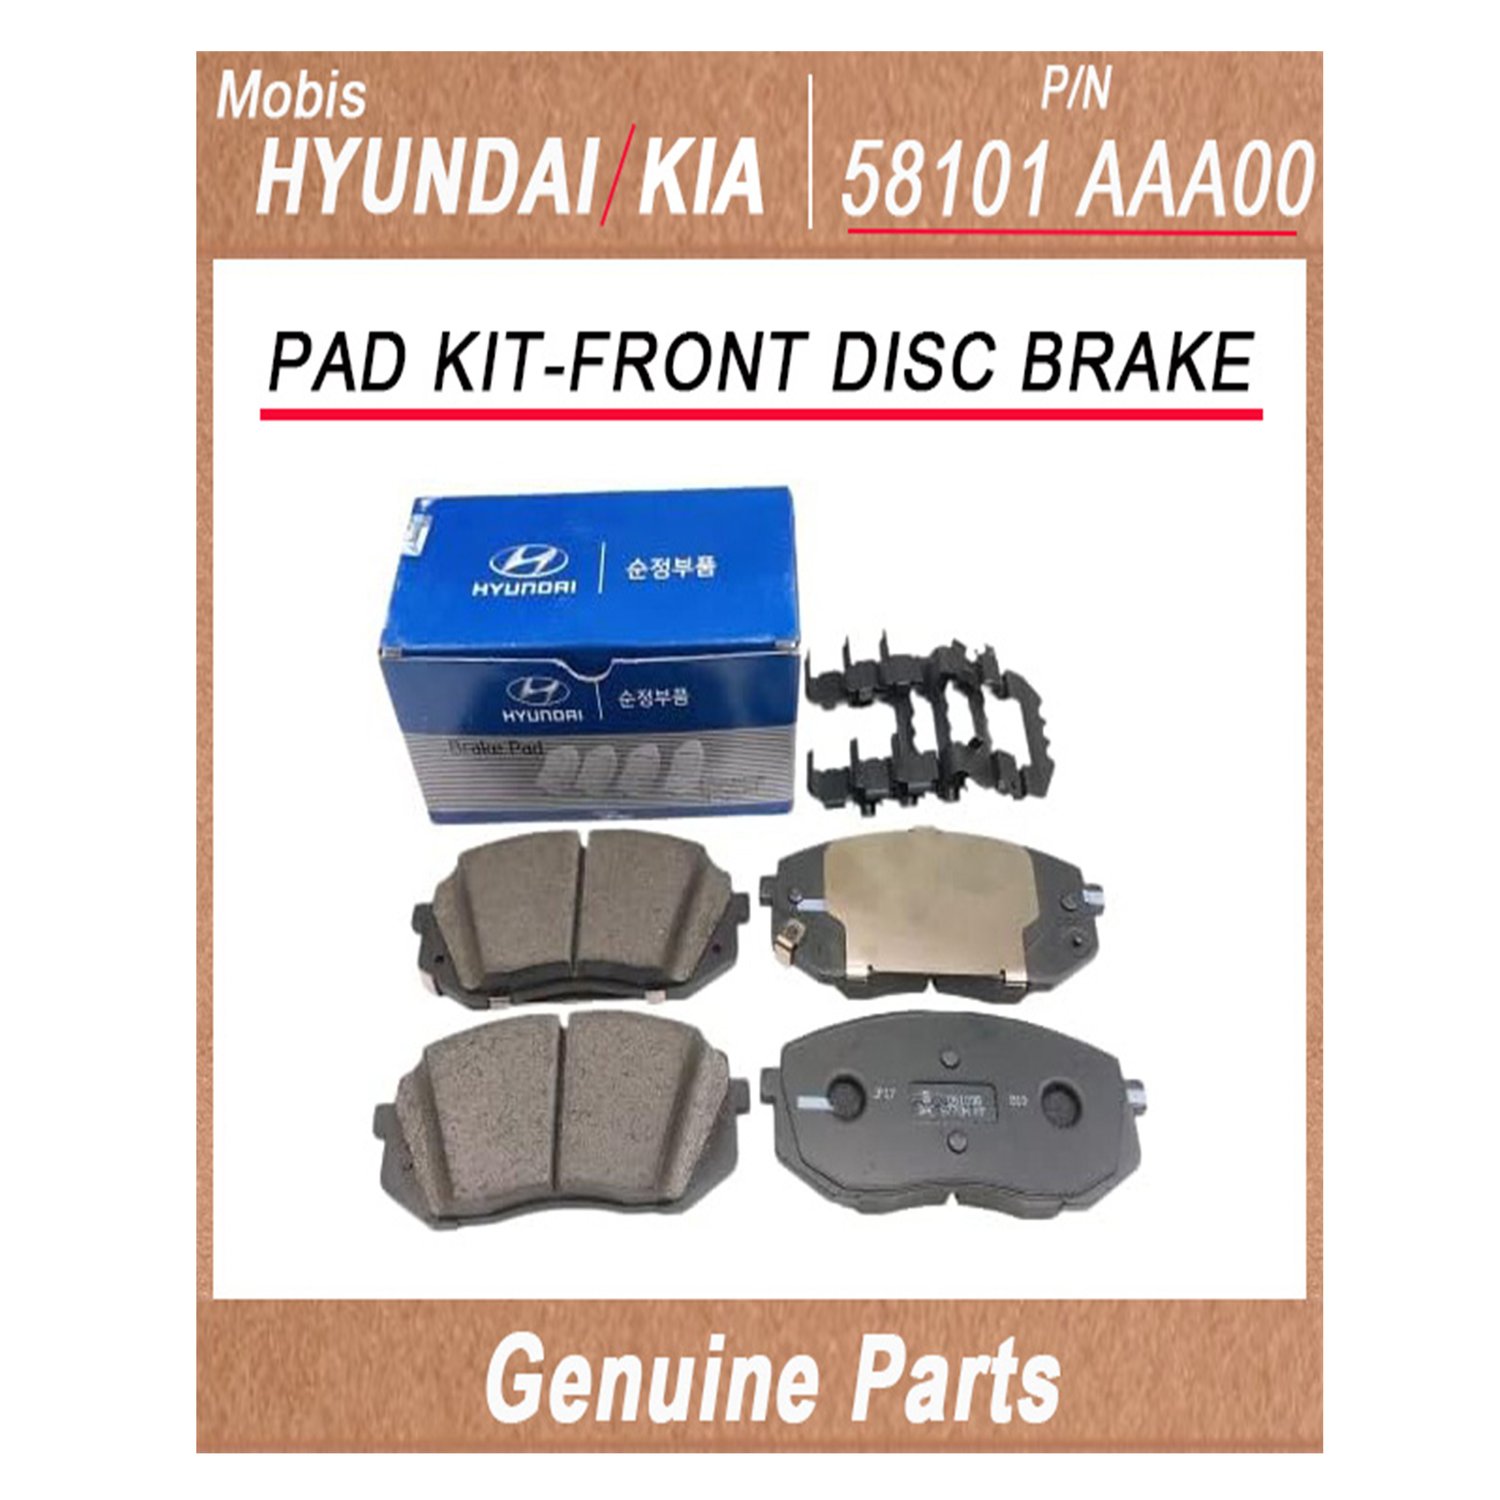 58101AAA00 _ PAD KIT_FRONT DISC BRAKE _ Genuine Korean Automotive Spare Parts _ Hyundai Kia _Mobis_